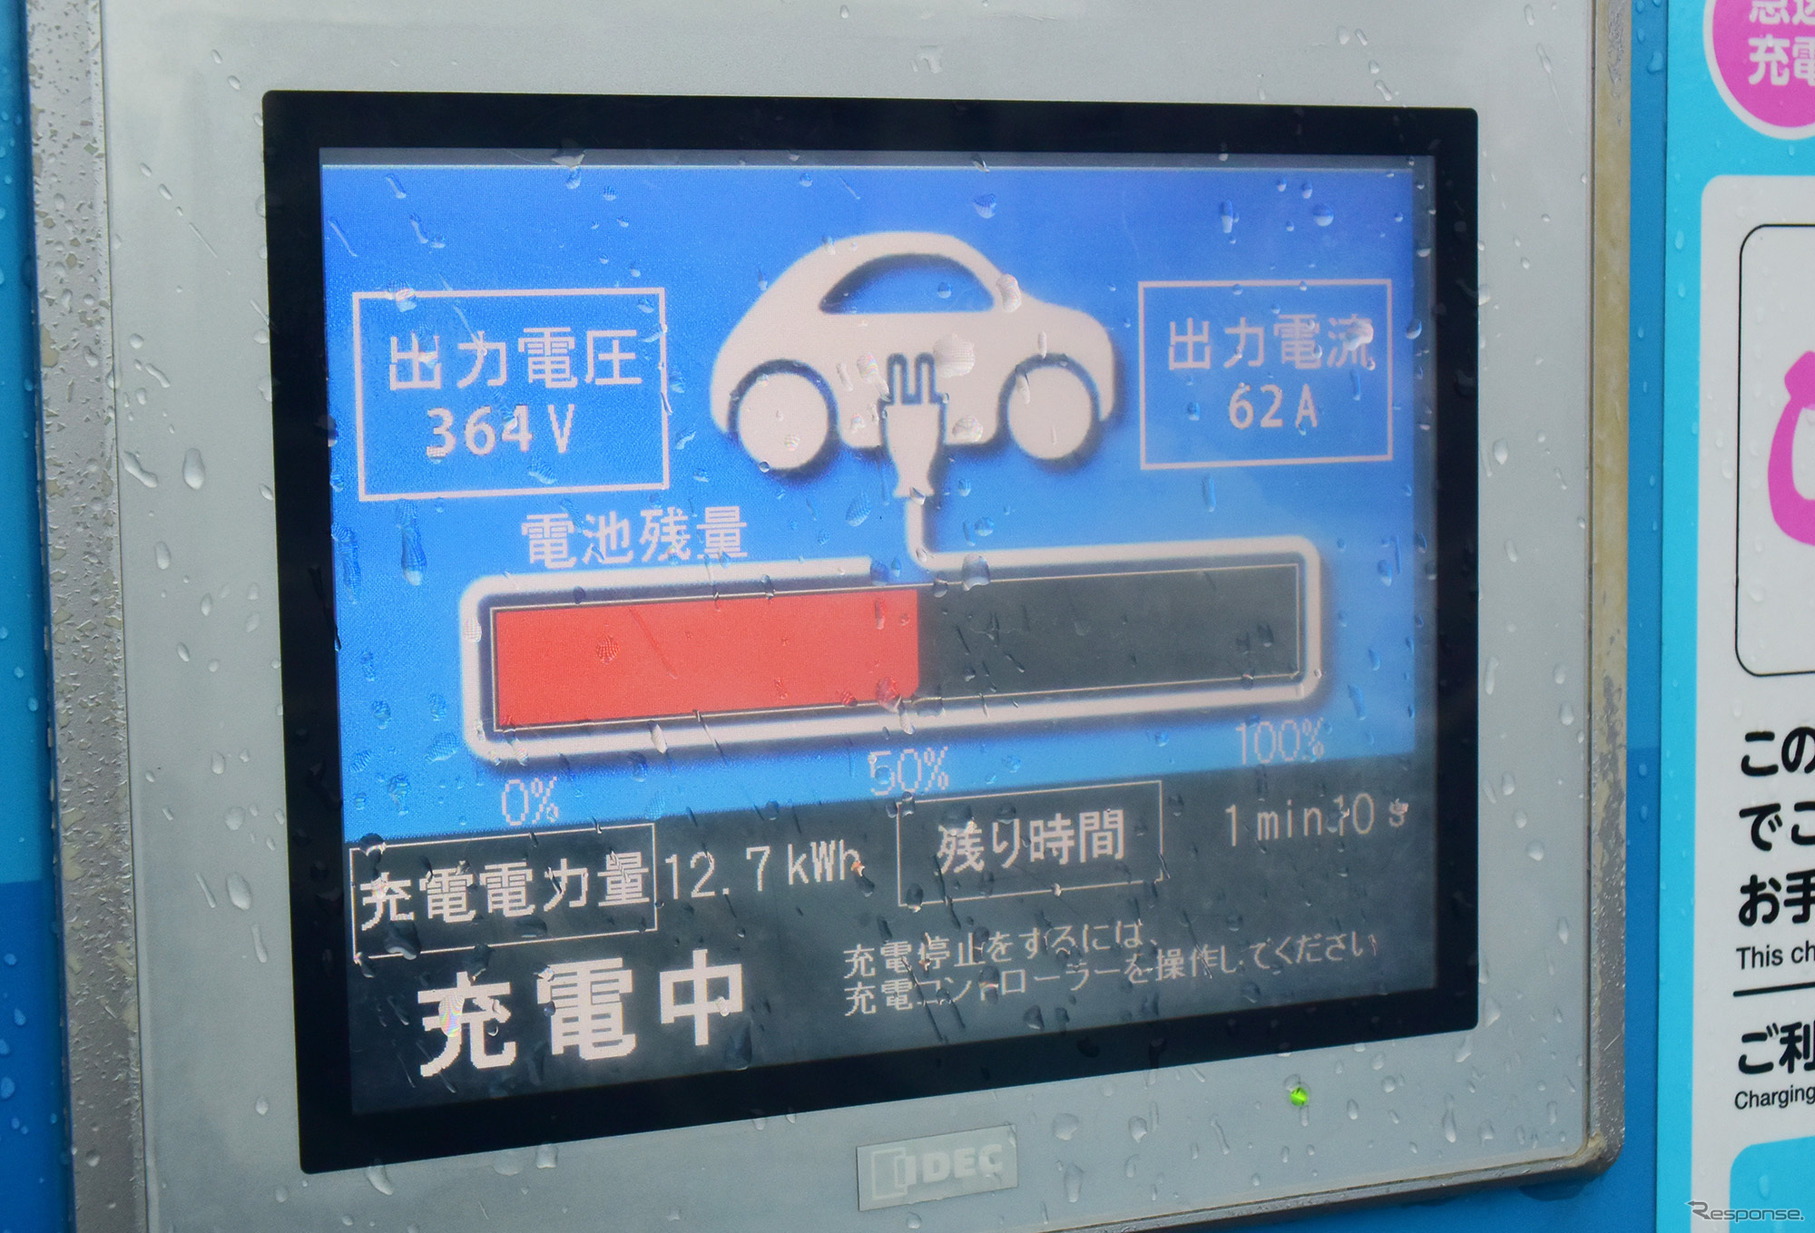 バッテリー温度が上がった状態では30分で13kWh弱しか入らない。帰路の東名、新東名は4200kmツーリングの中で唯一、性能に不満を持った区間であった。